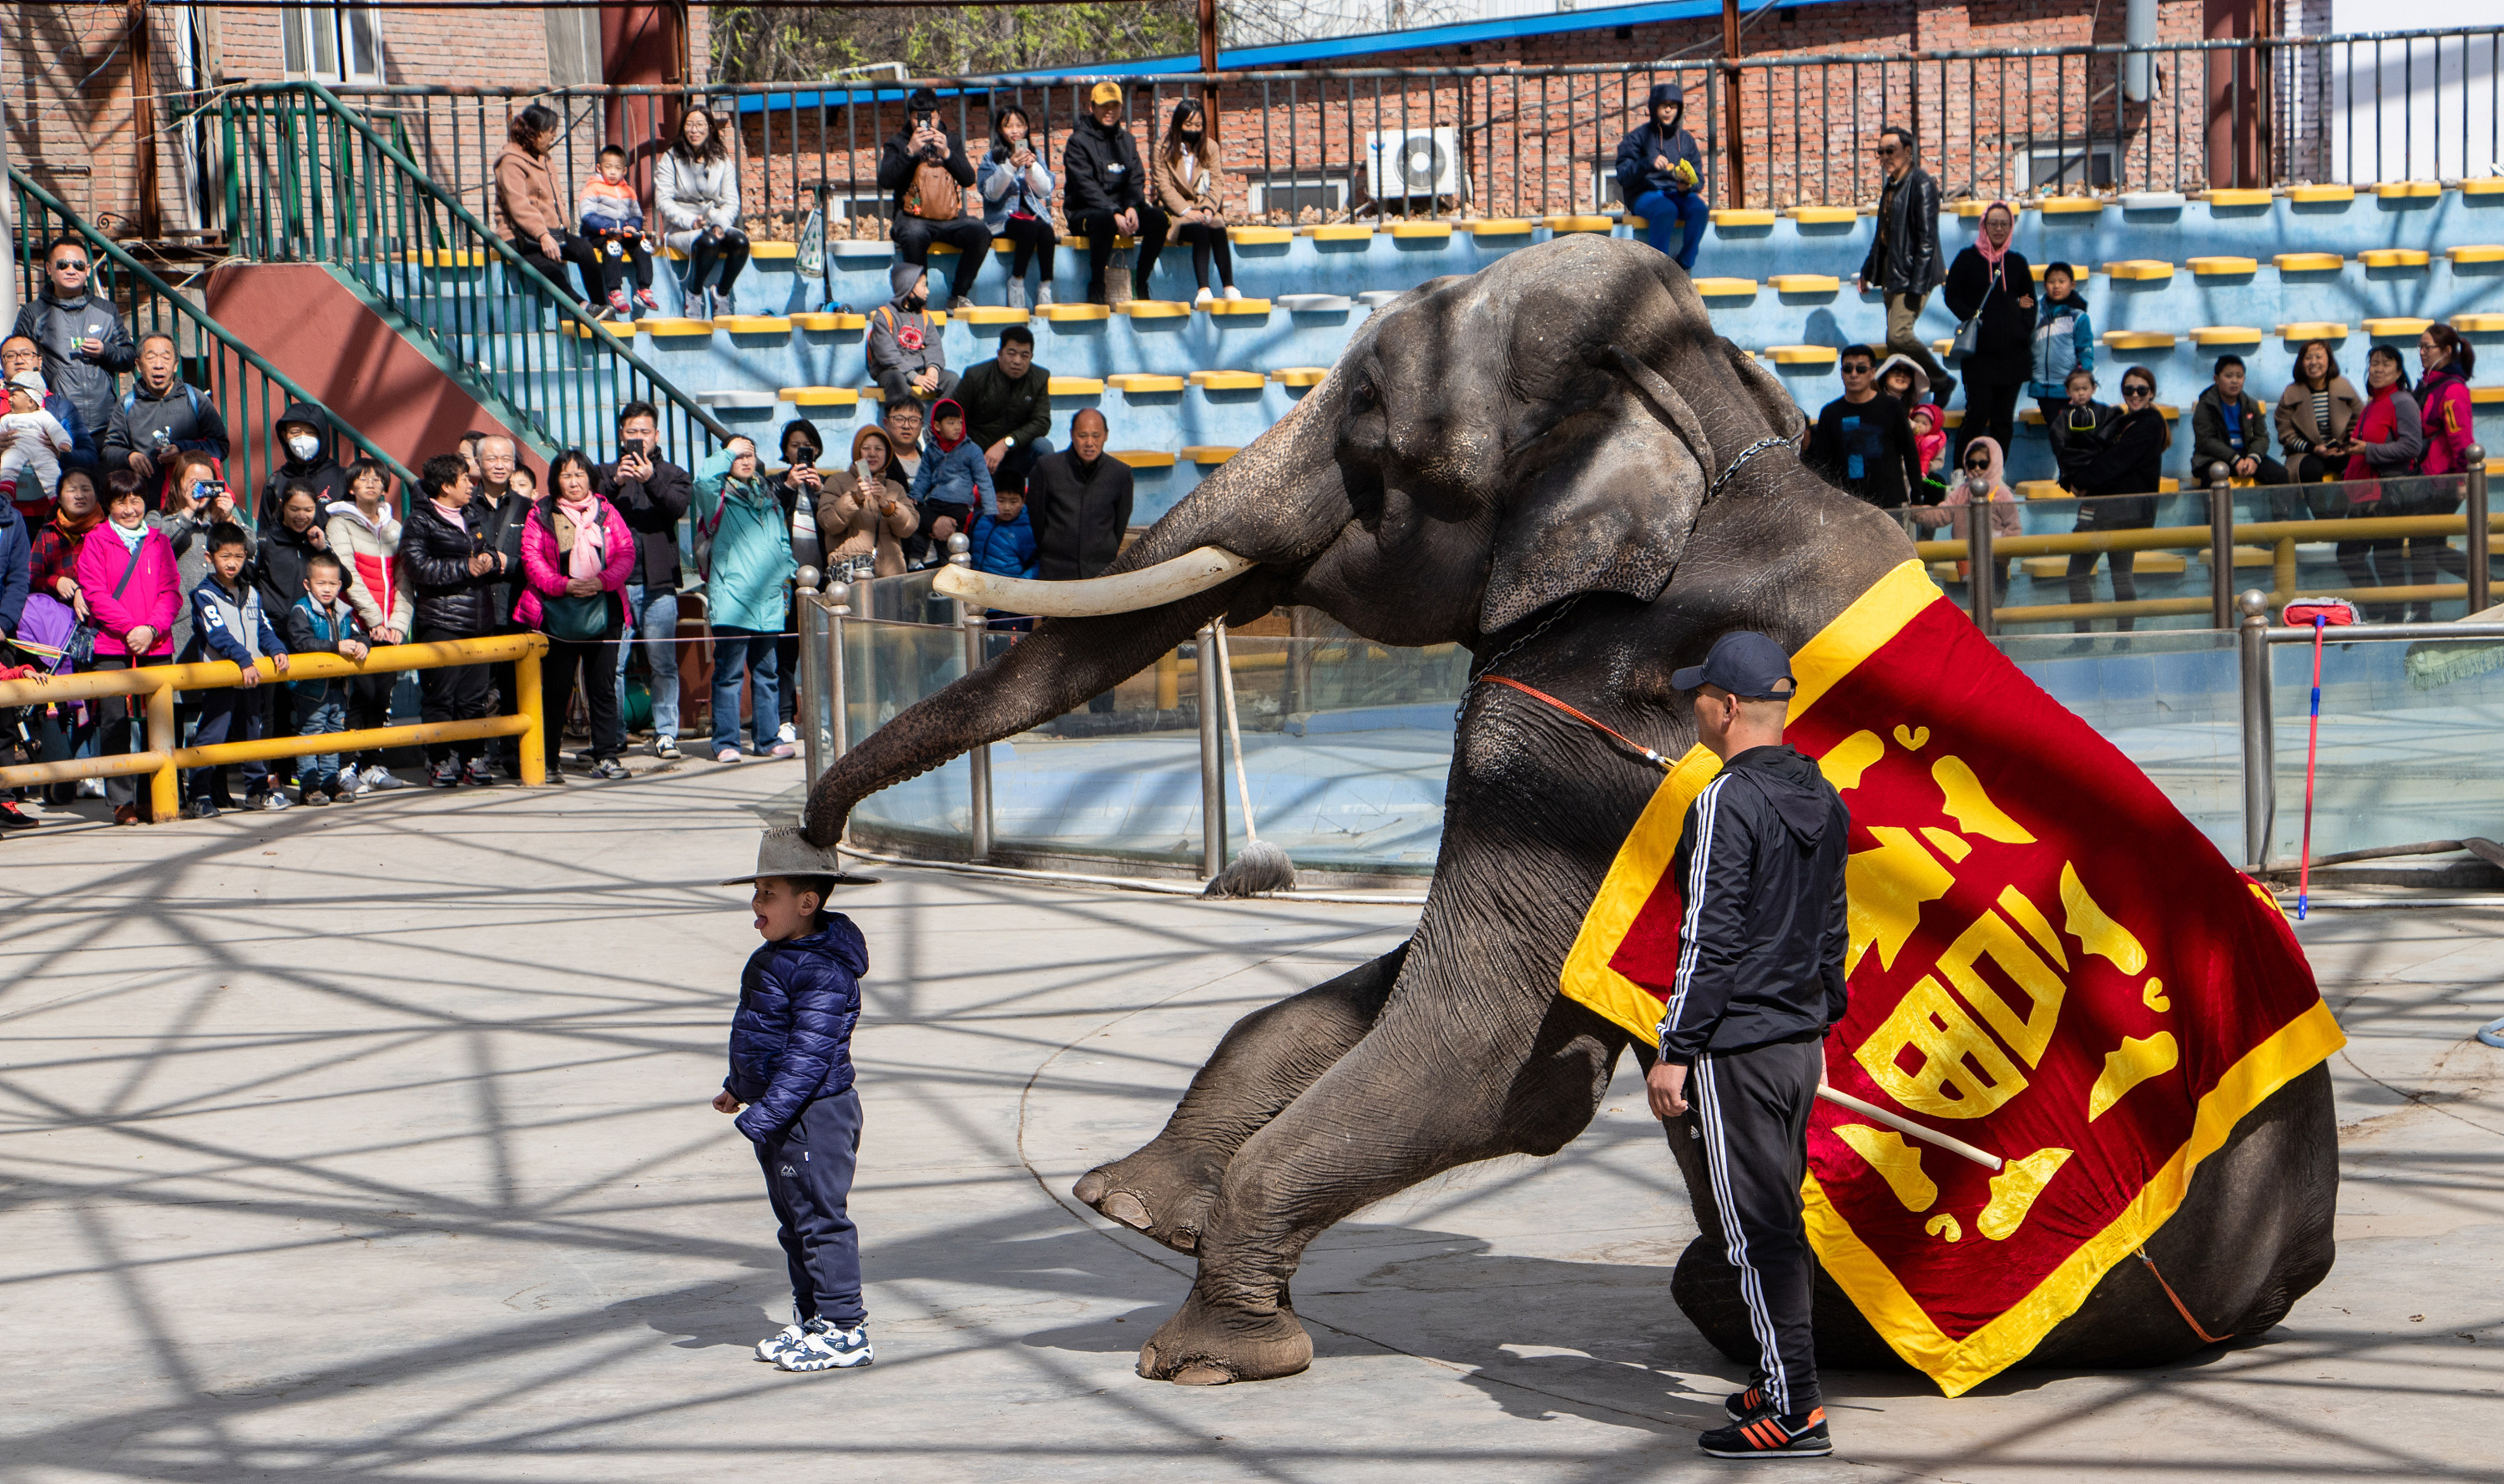 爱心去旅行—不一样的志工旅行（上）：在泰国大象世界为大象工作 - Apple 101°